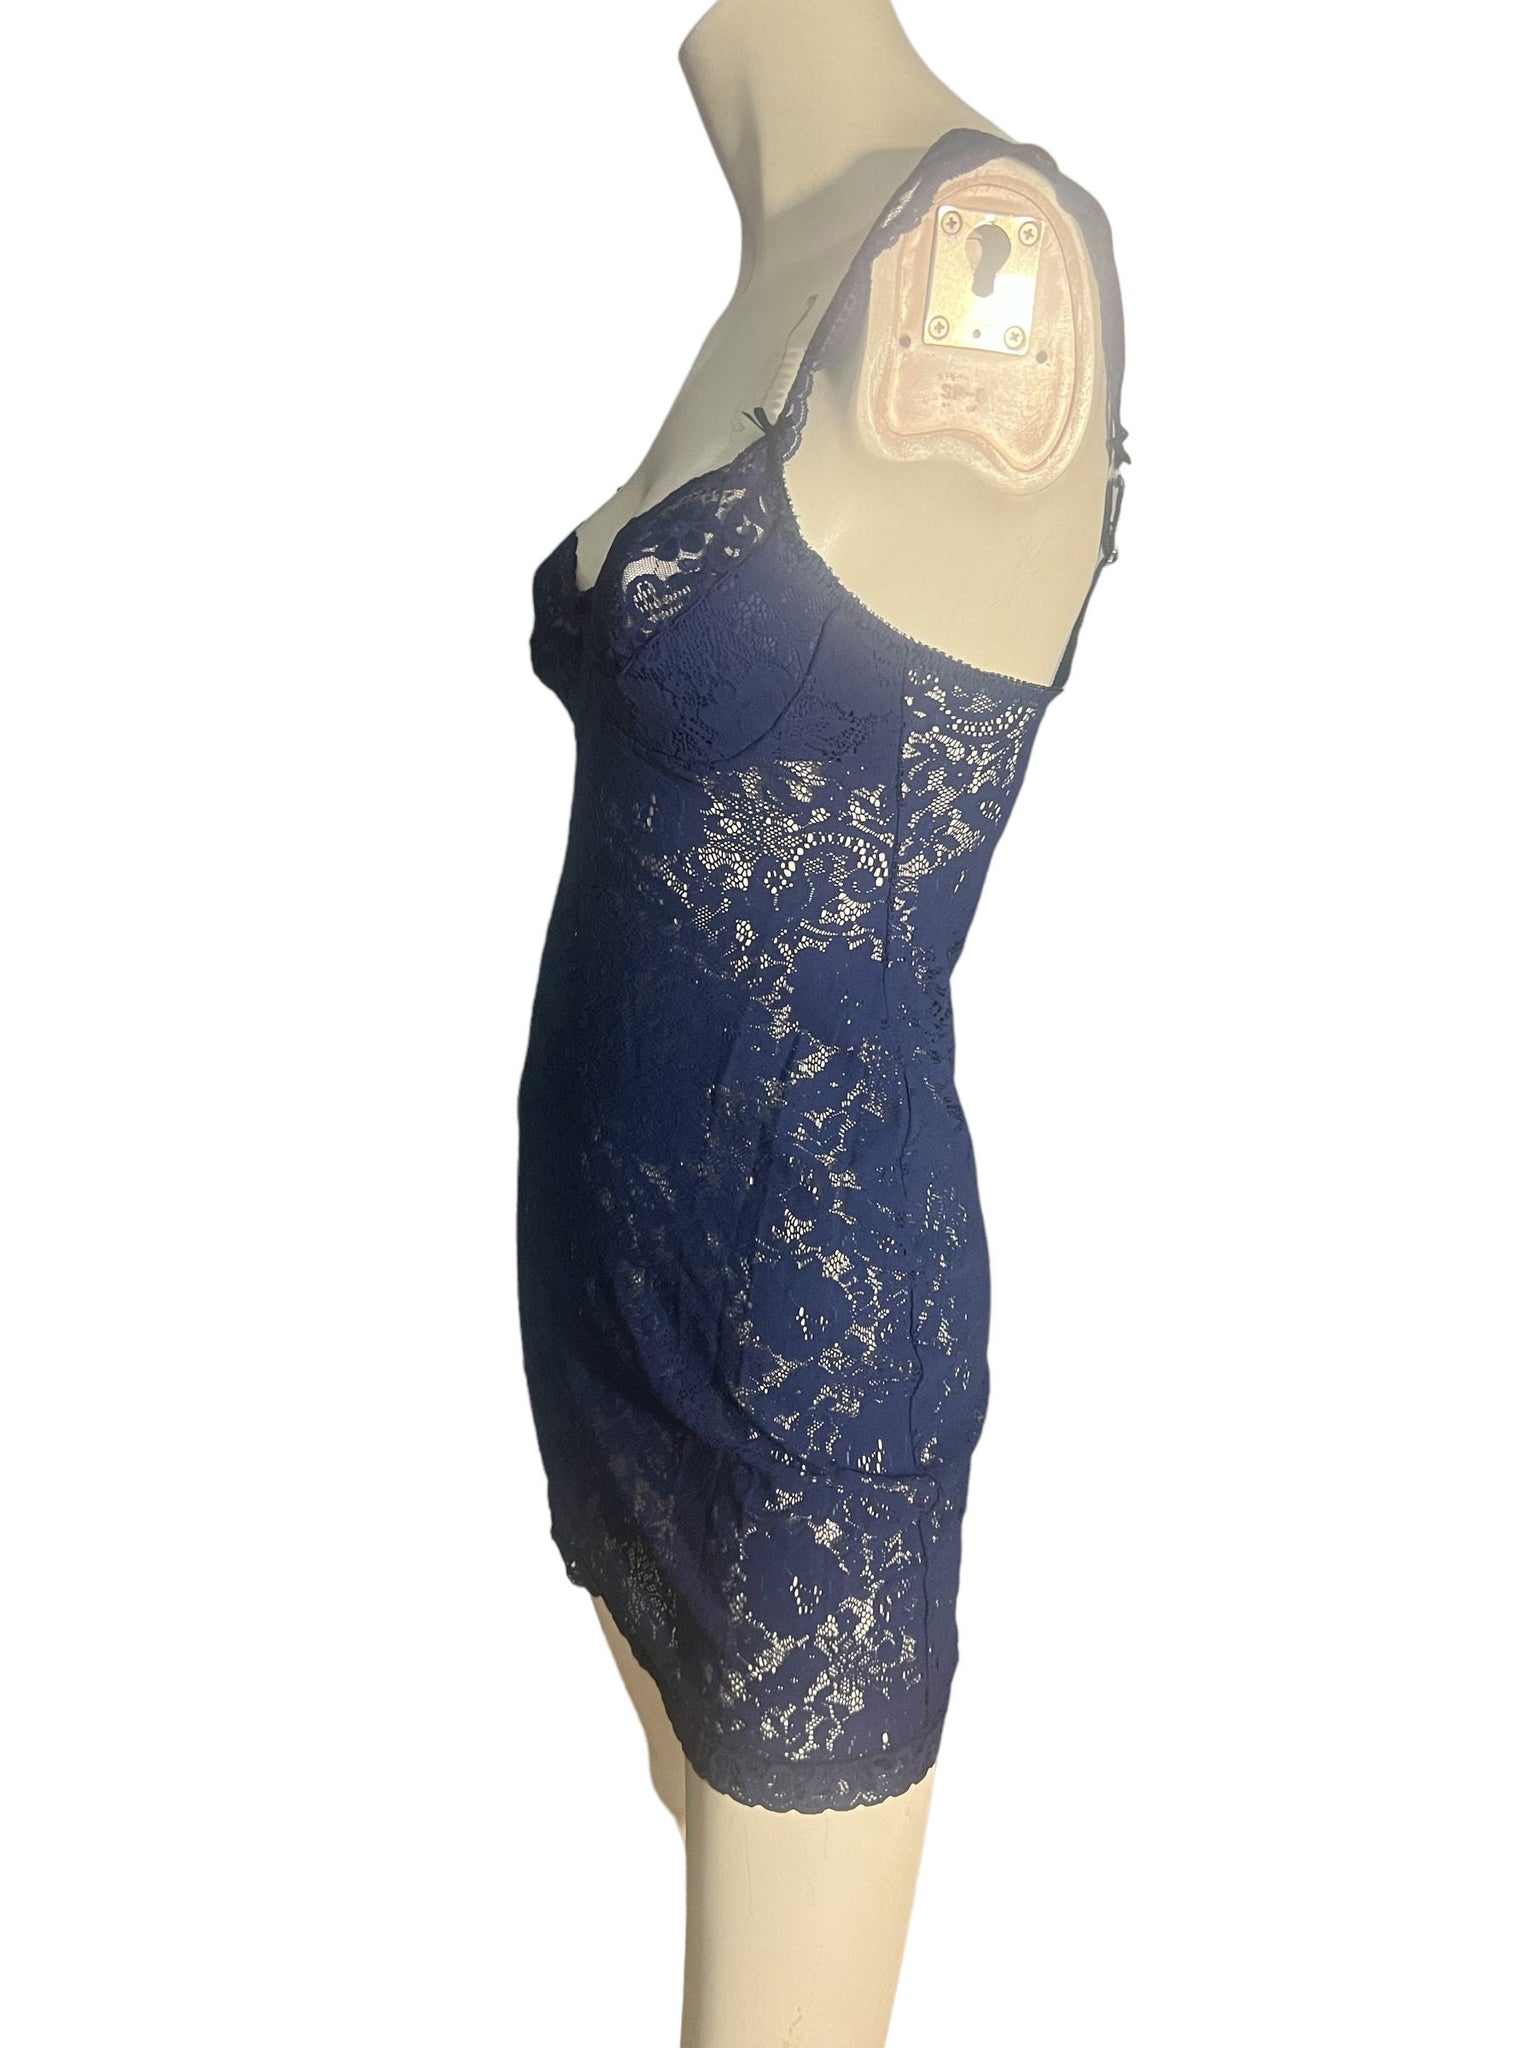 Vintage Victoria's Secret blue lace lingerie S